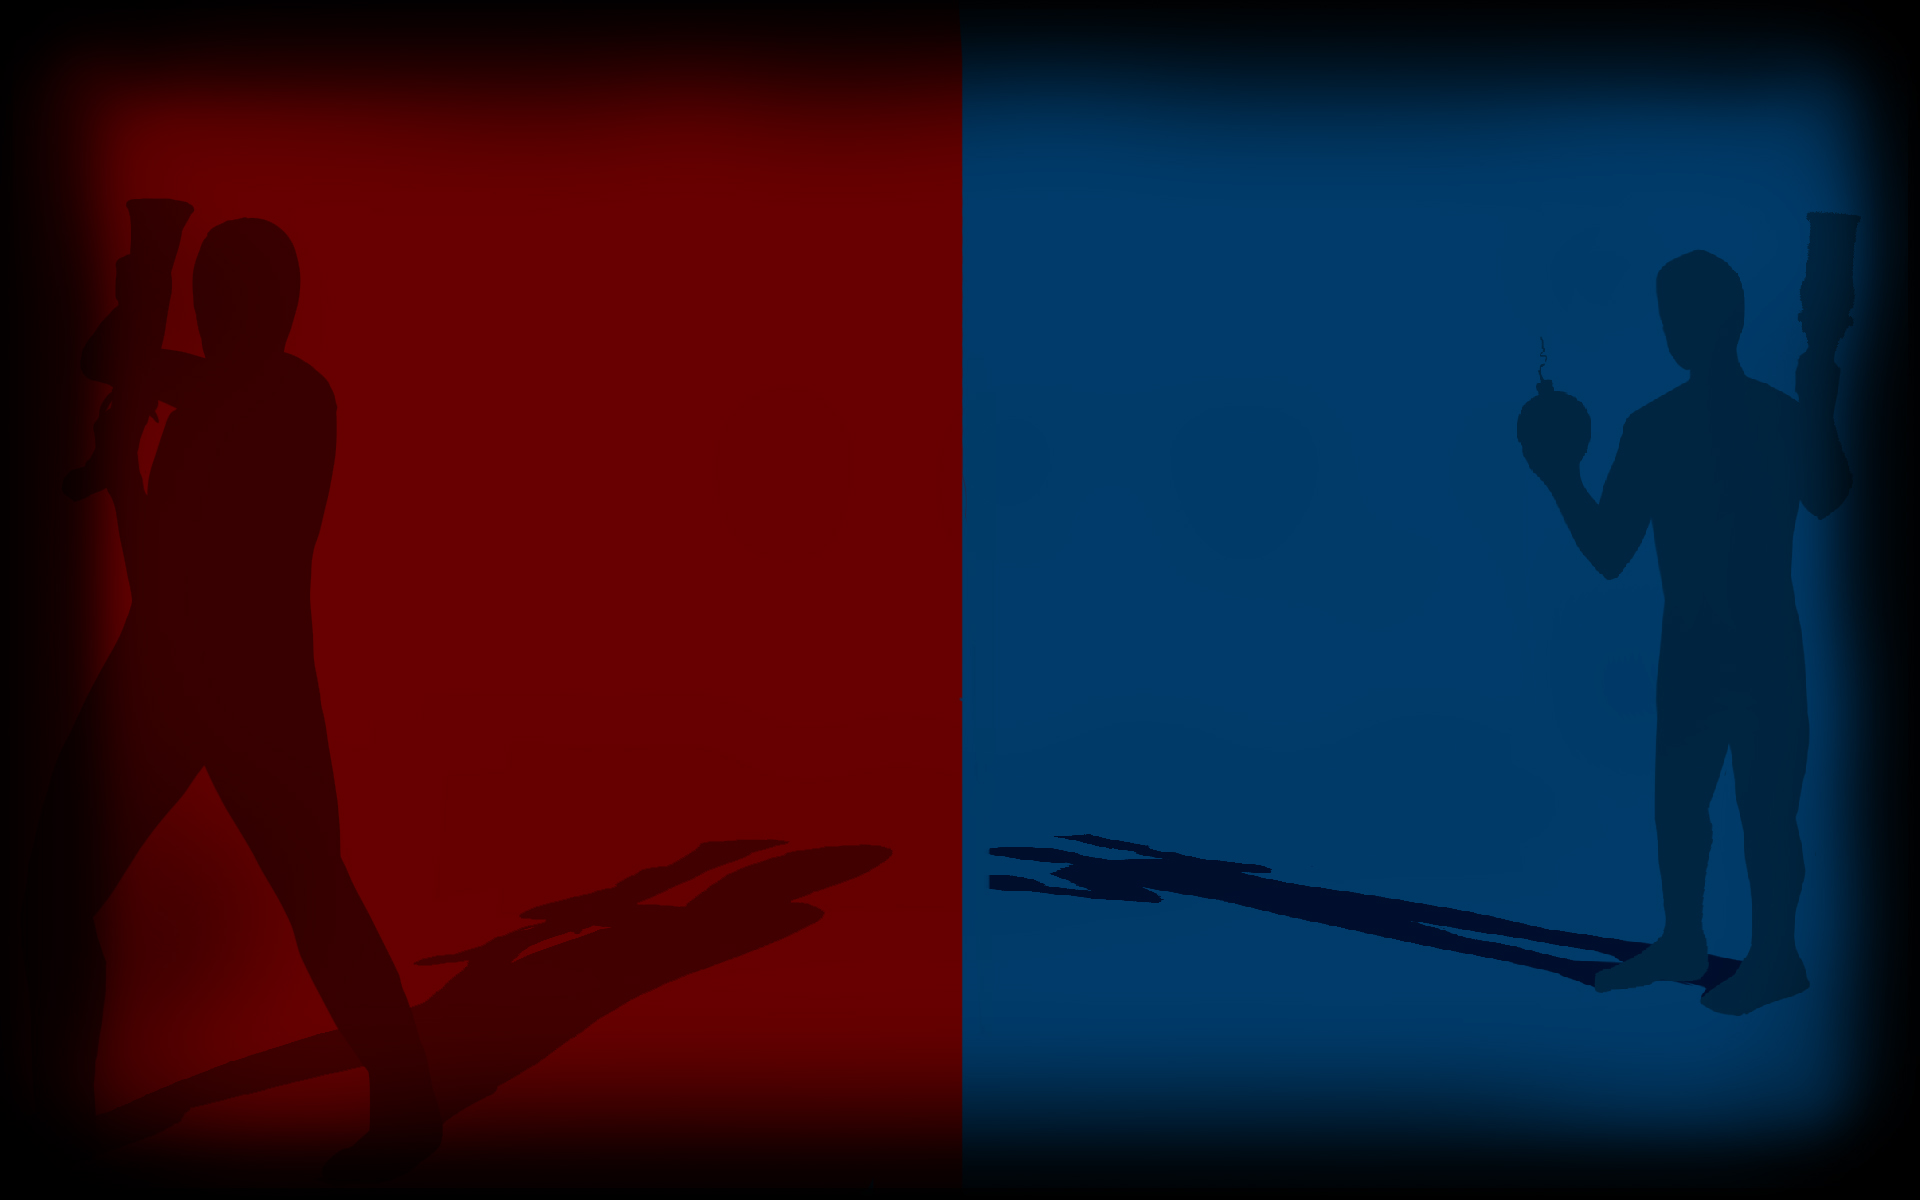 Bạn là fan của Red Vs Blue? Đừng bỏ lỡ cơ hội trang trí desktop của mình với hình nền Steam Red Vs Blue. Với những chi tiết và gam màu đỏ đen đặc trưng, hình nền này đem lại sự thú vị và hứng thú khi trải nghiệm các trò chơi của bạn.